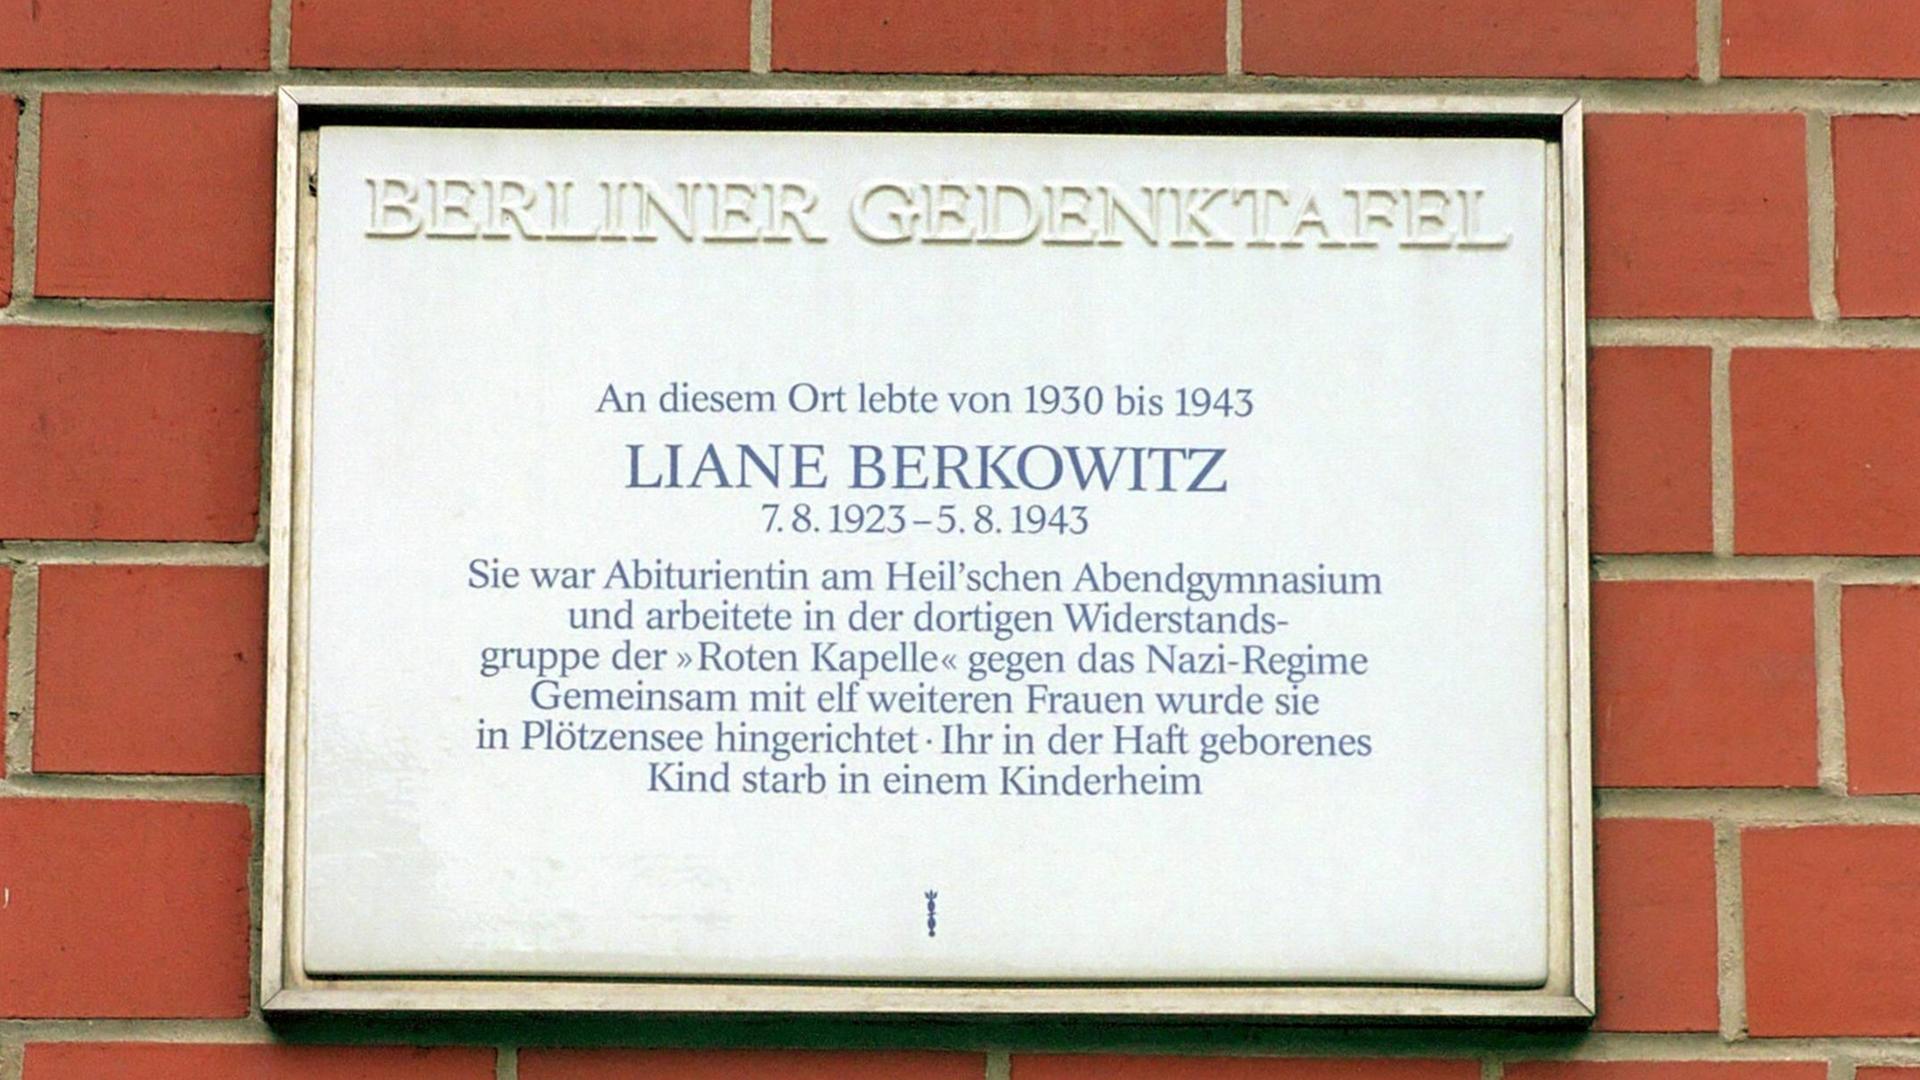 Gdektafel für Liane Berkowitz am Viktoria-Luise-Platz in Berlin, 